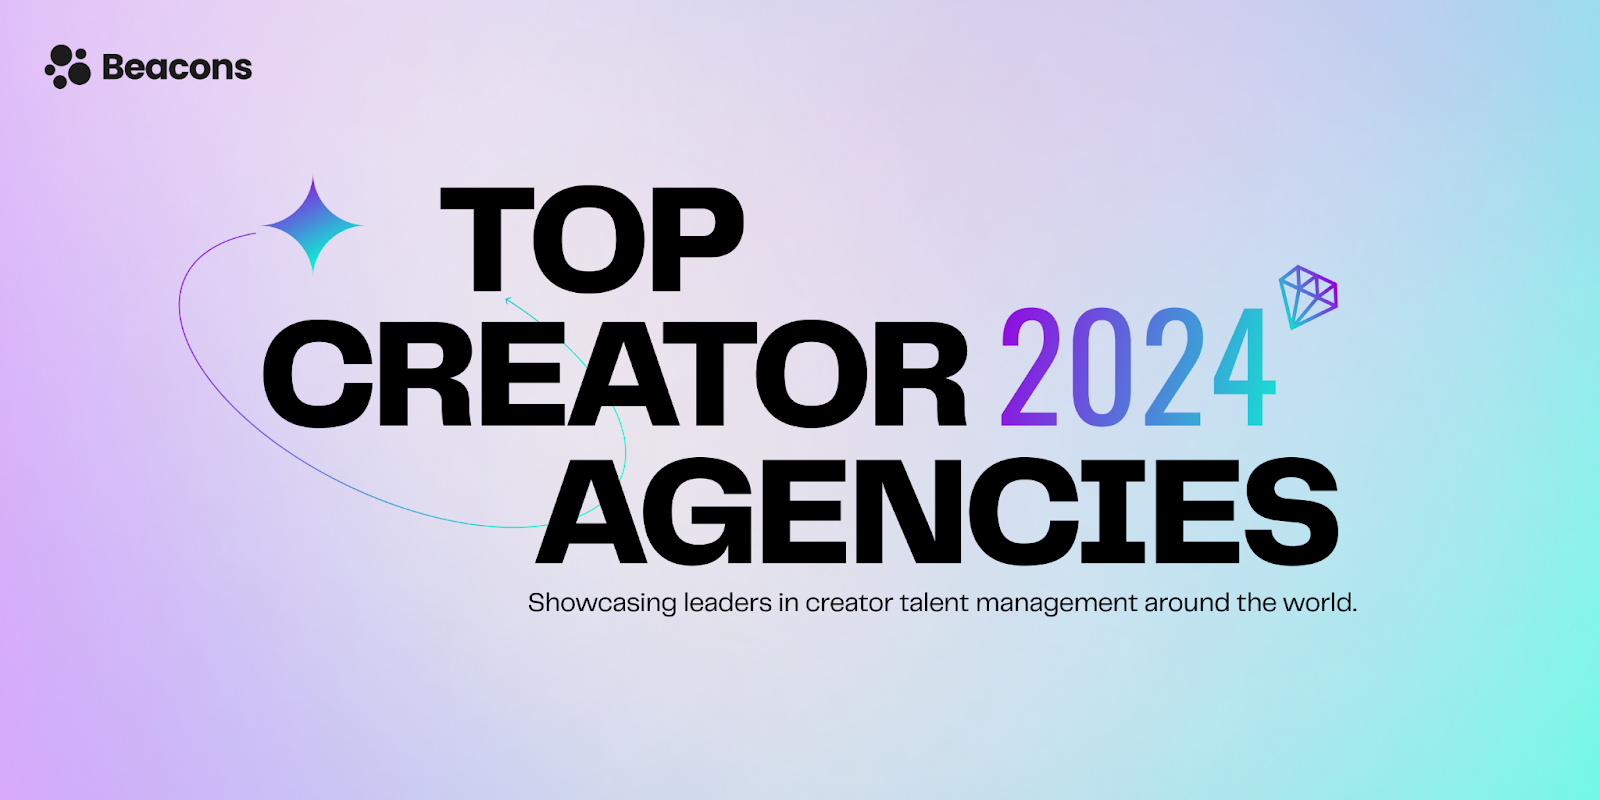 Beacons Spotlights Top Creator Agencies In 2024 List